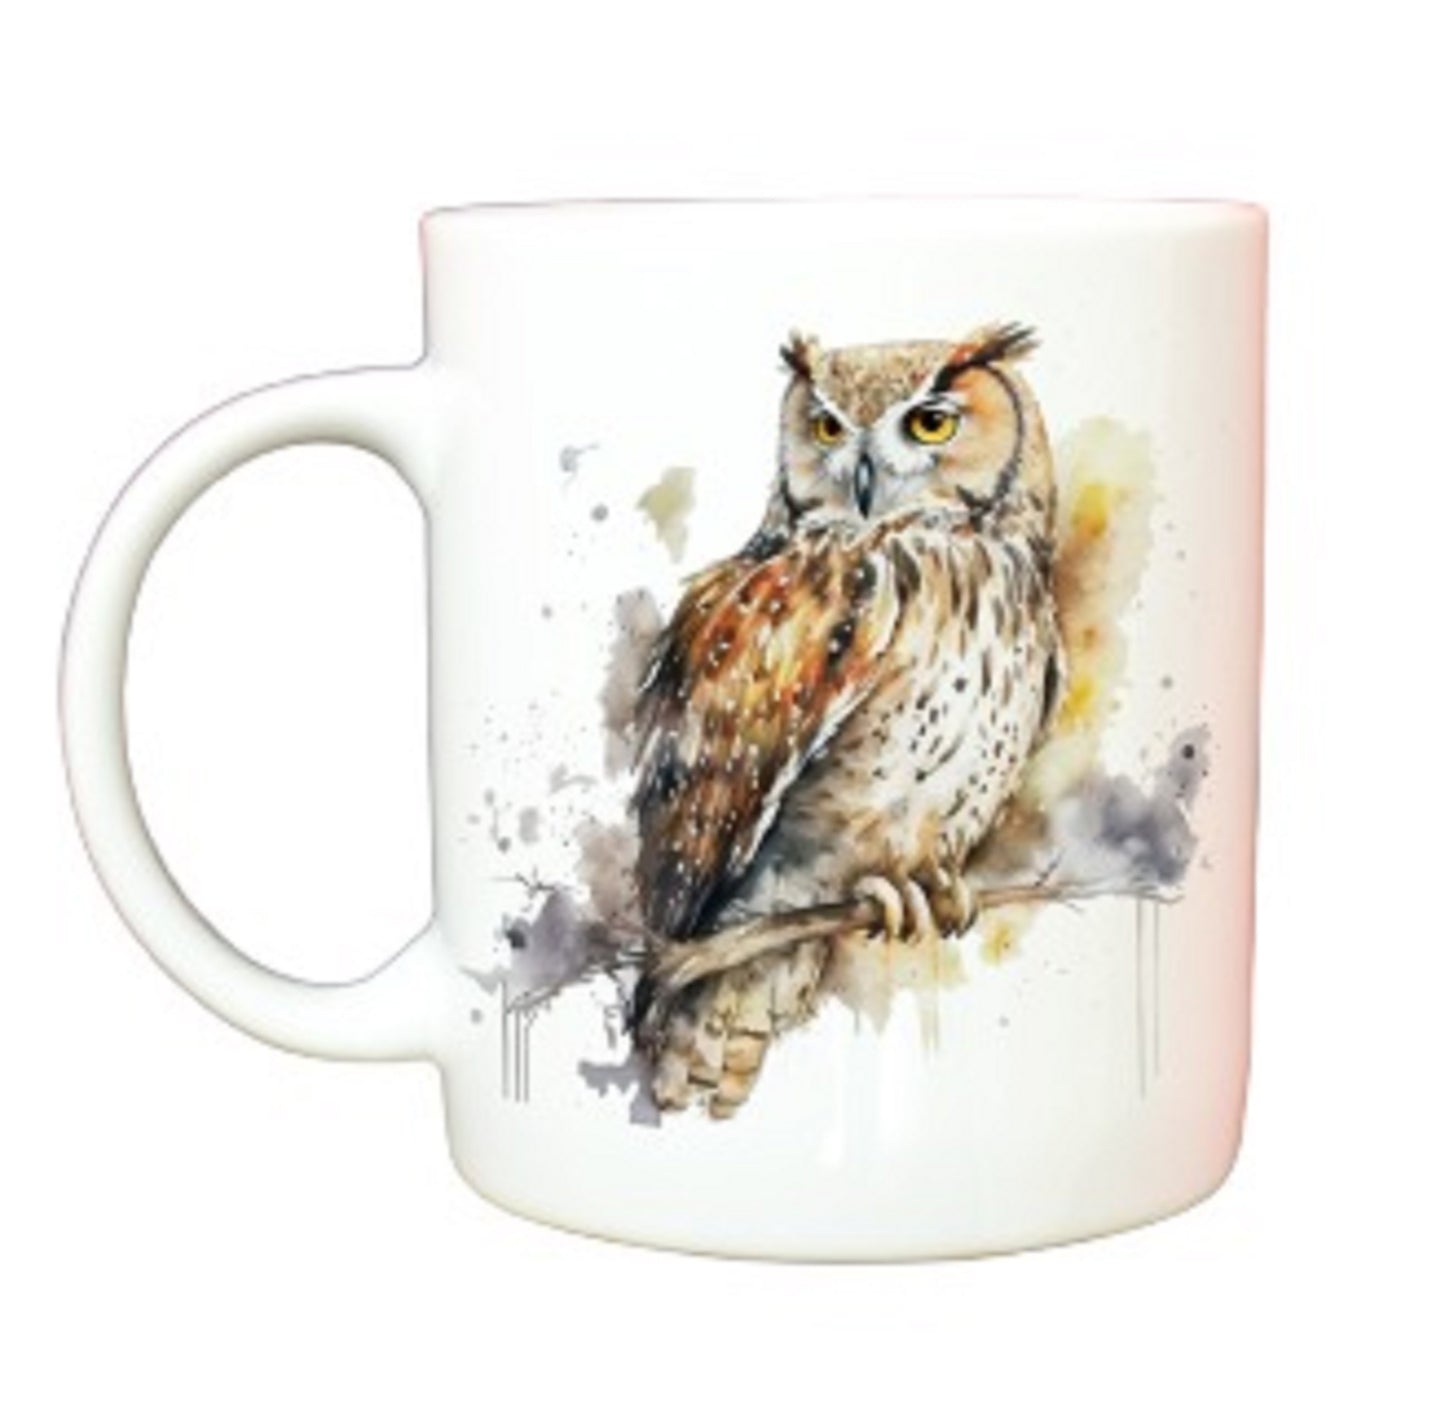  Paint Splashed Owl Mug by Free Spirit Accessories sold by Free Spirit Accessories